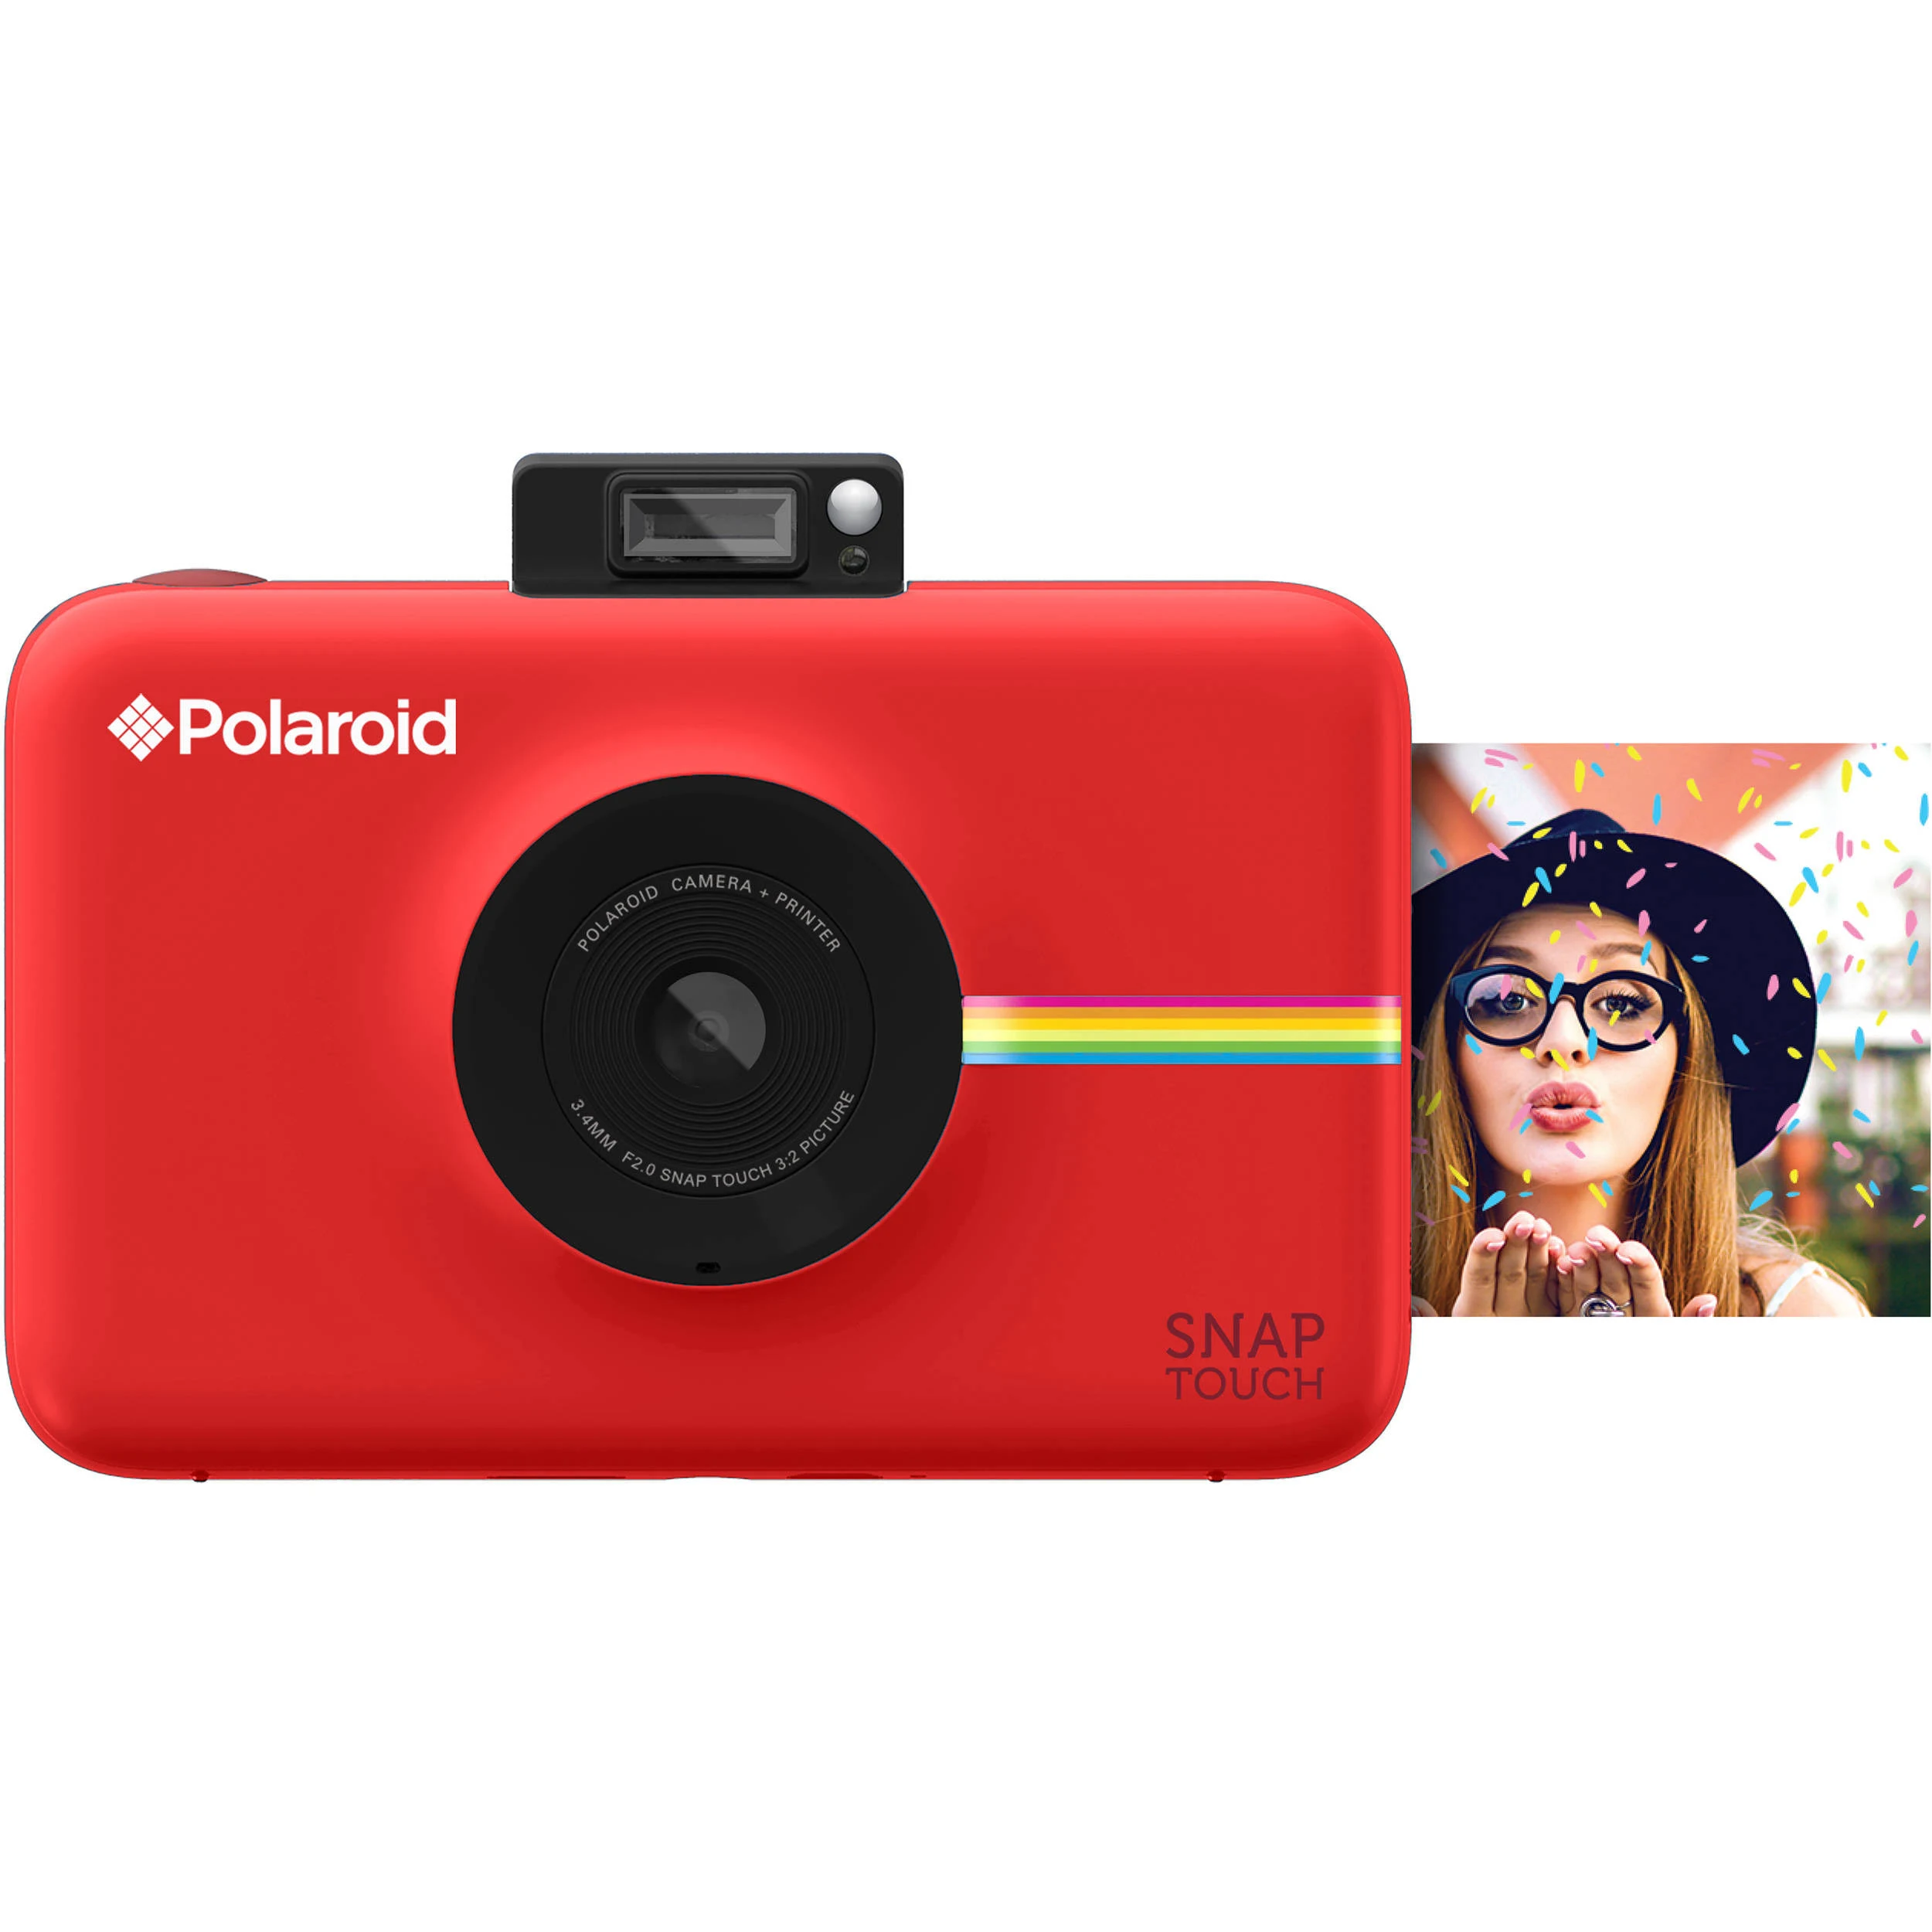 Polaroid Câmera digital Snap Touch Instant Print com display LCD (vermelho) com tecnologia de impressão Zink Zero Ink